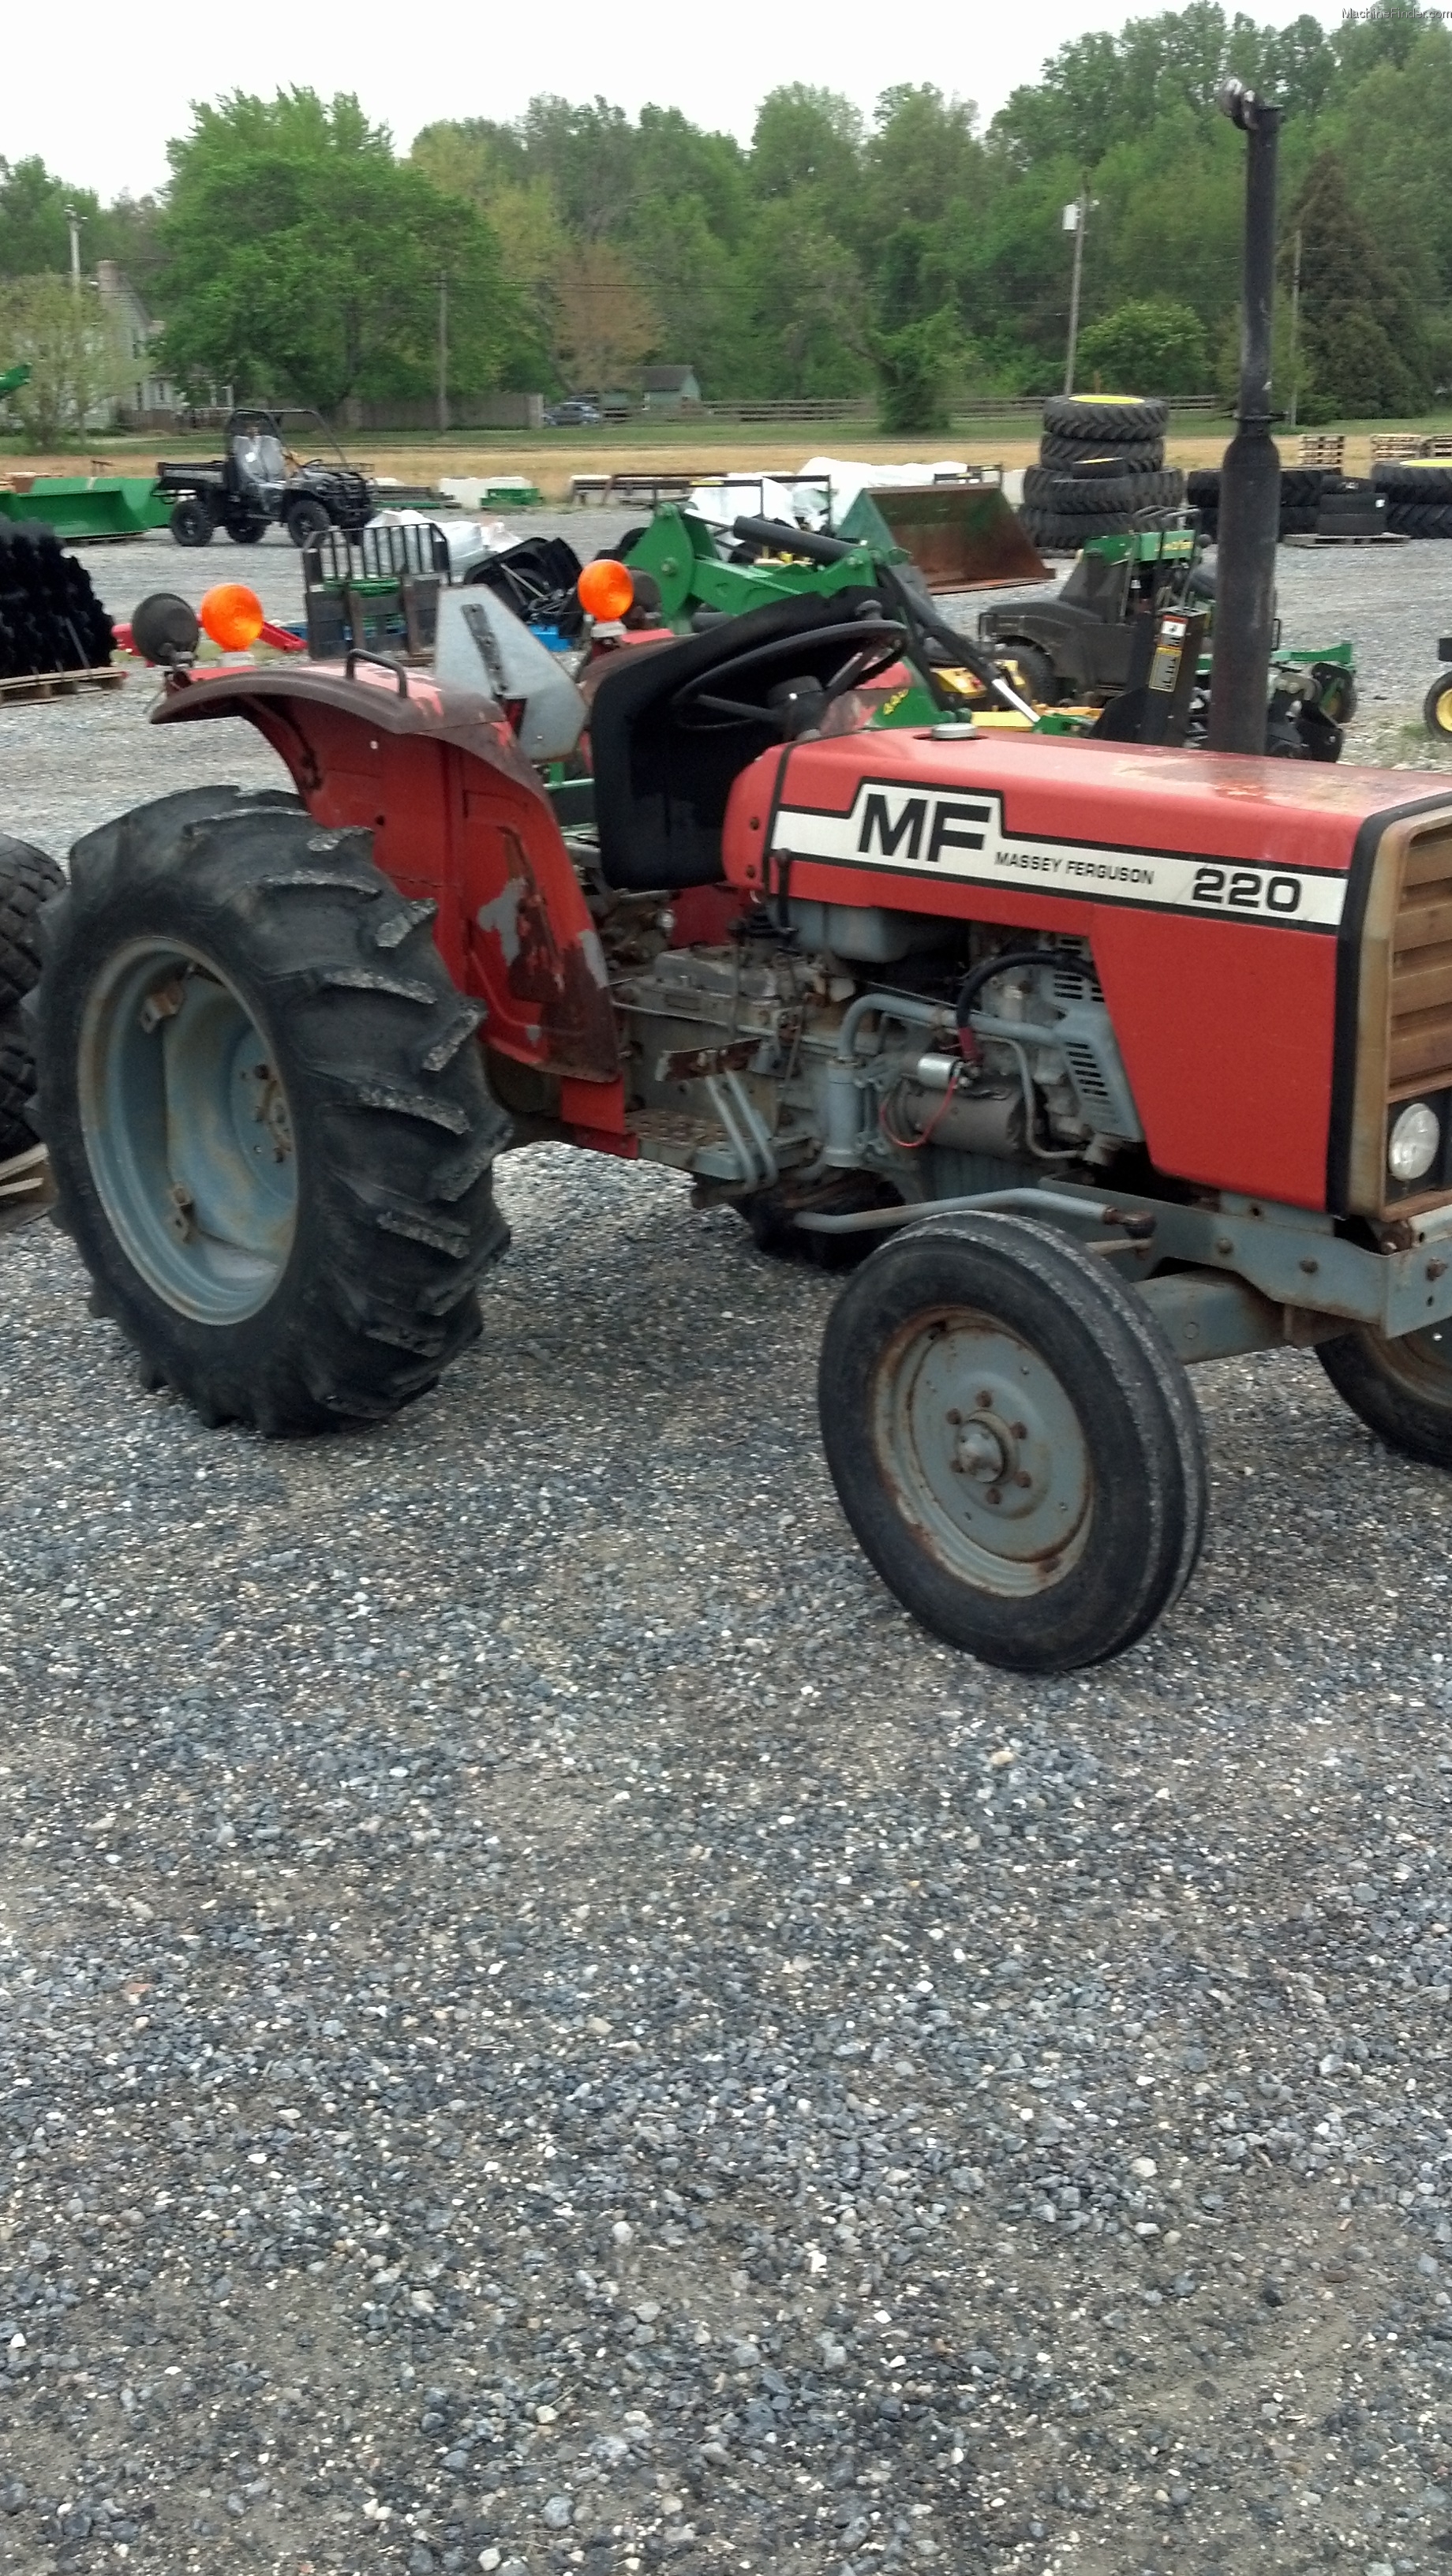 1980 Massey - Ferguson 220 Tractors - Compact (1-40hp.) - John Deere ...